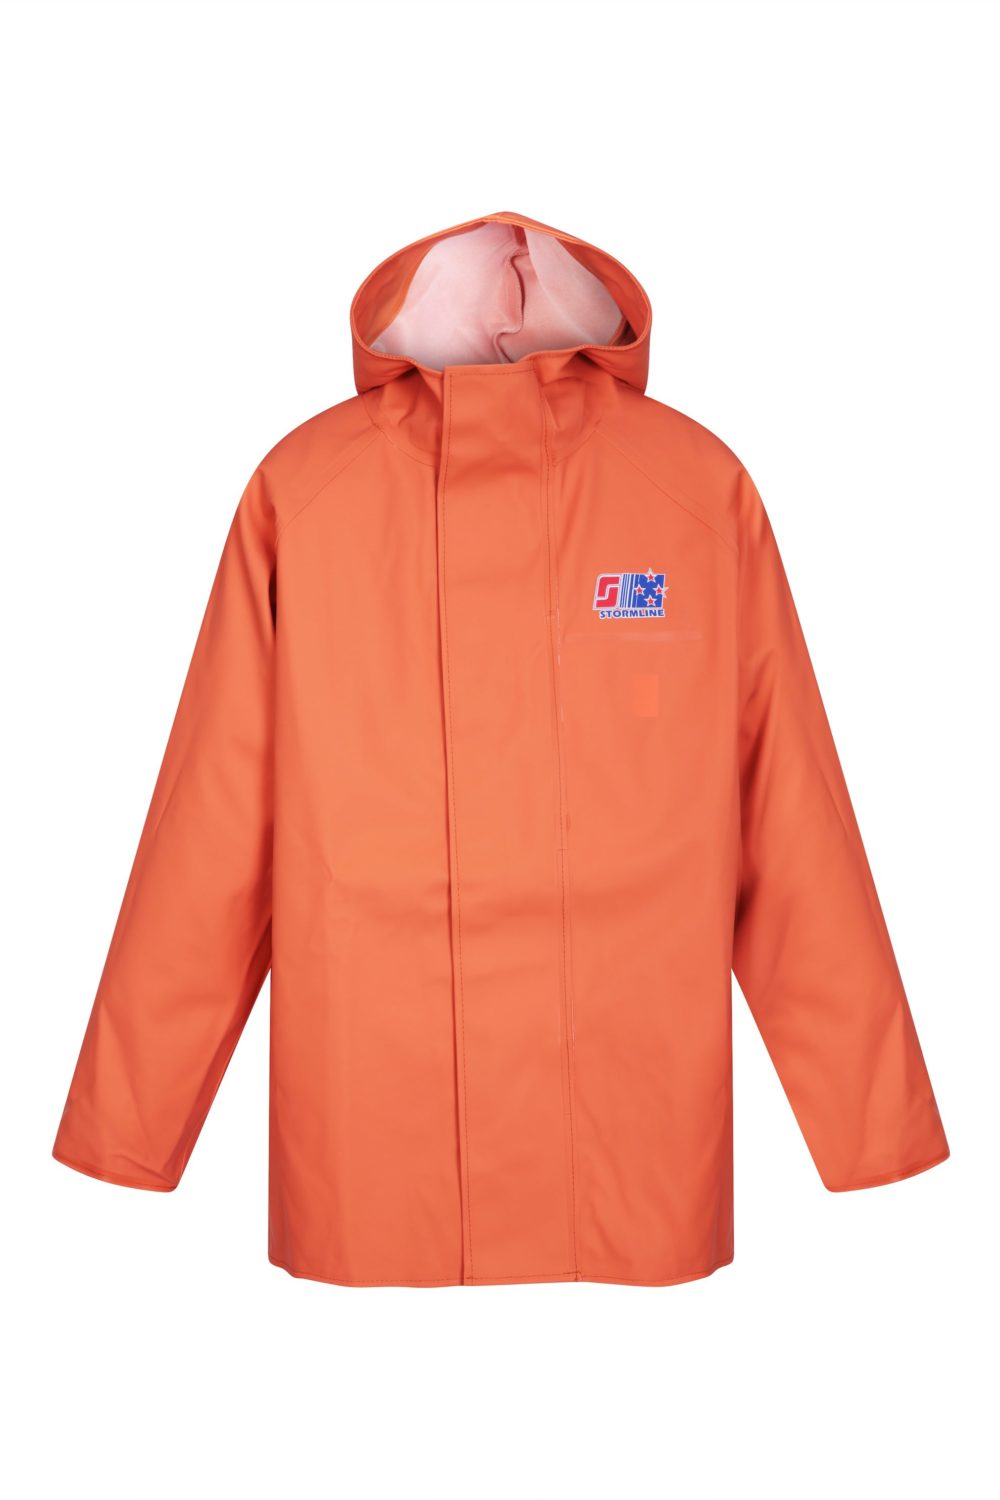 Stormtex 248O Midweight PVC Commercial Rain Gear Jacket (Size: 2XL)